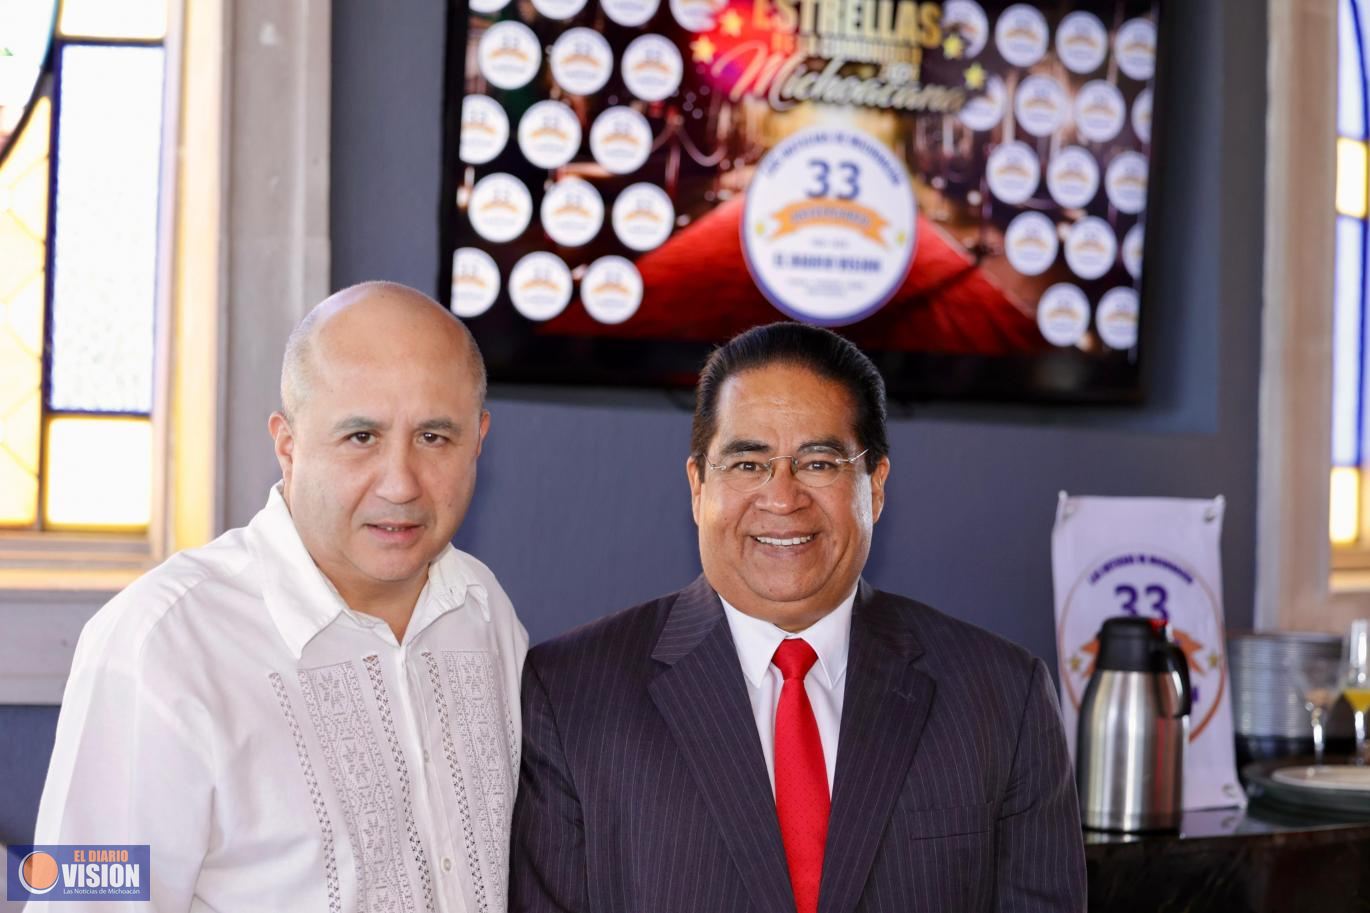 Ramón Hernández Orozco, asiste al 33 Aniversario de El Diario Visión de Michoacán